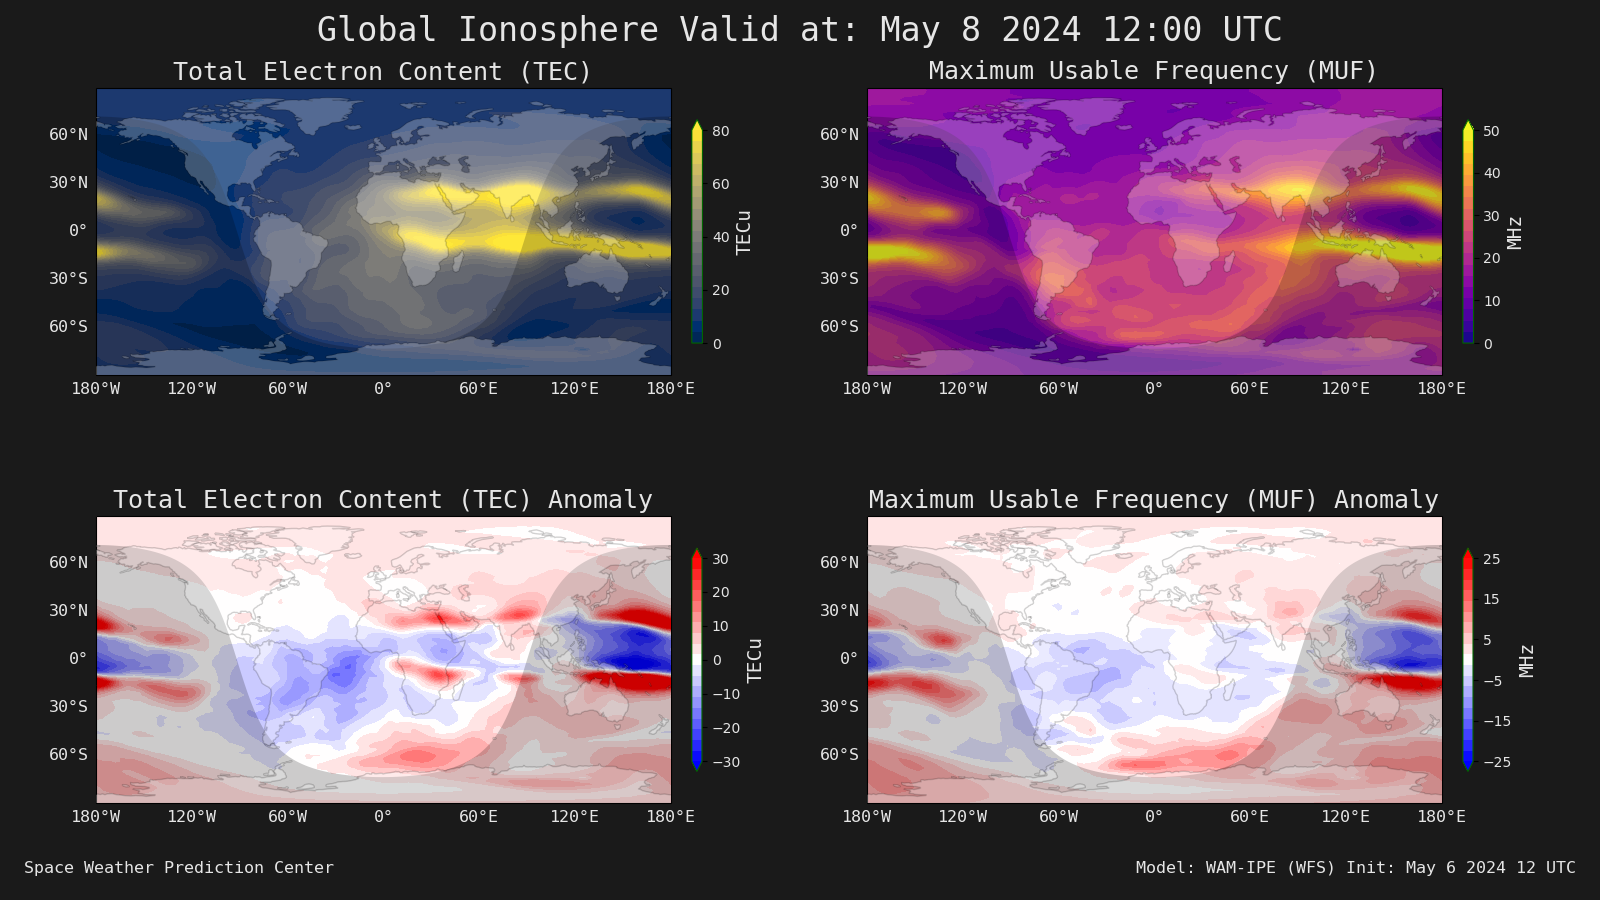 WAM-IPE Latest Ionosphere Forecast